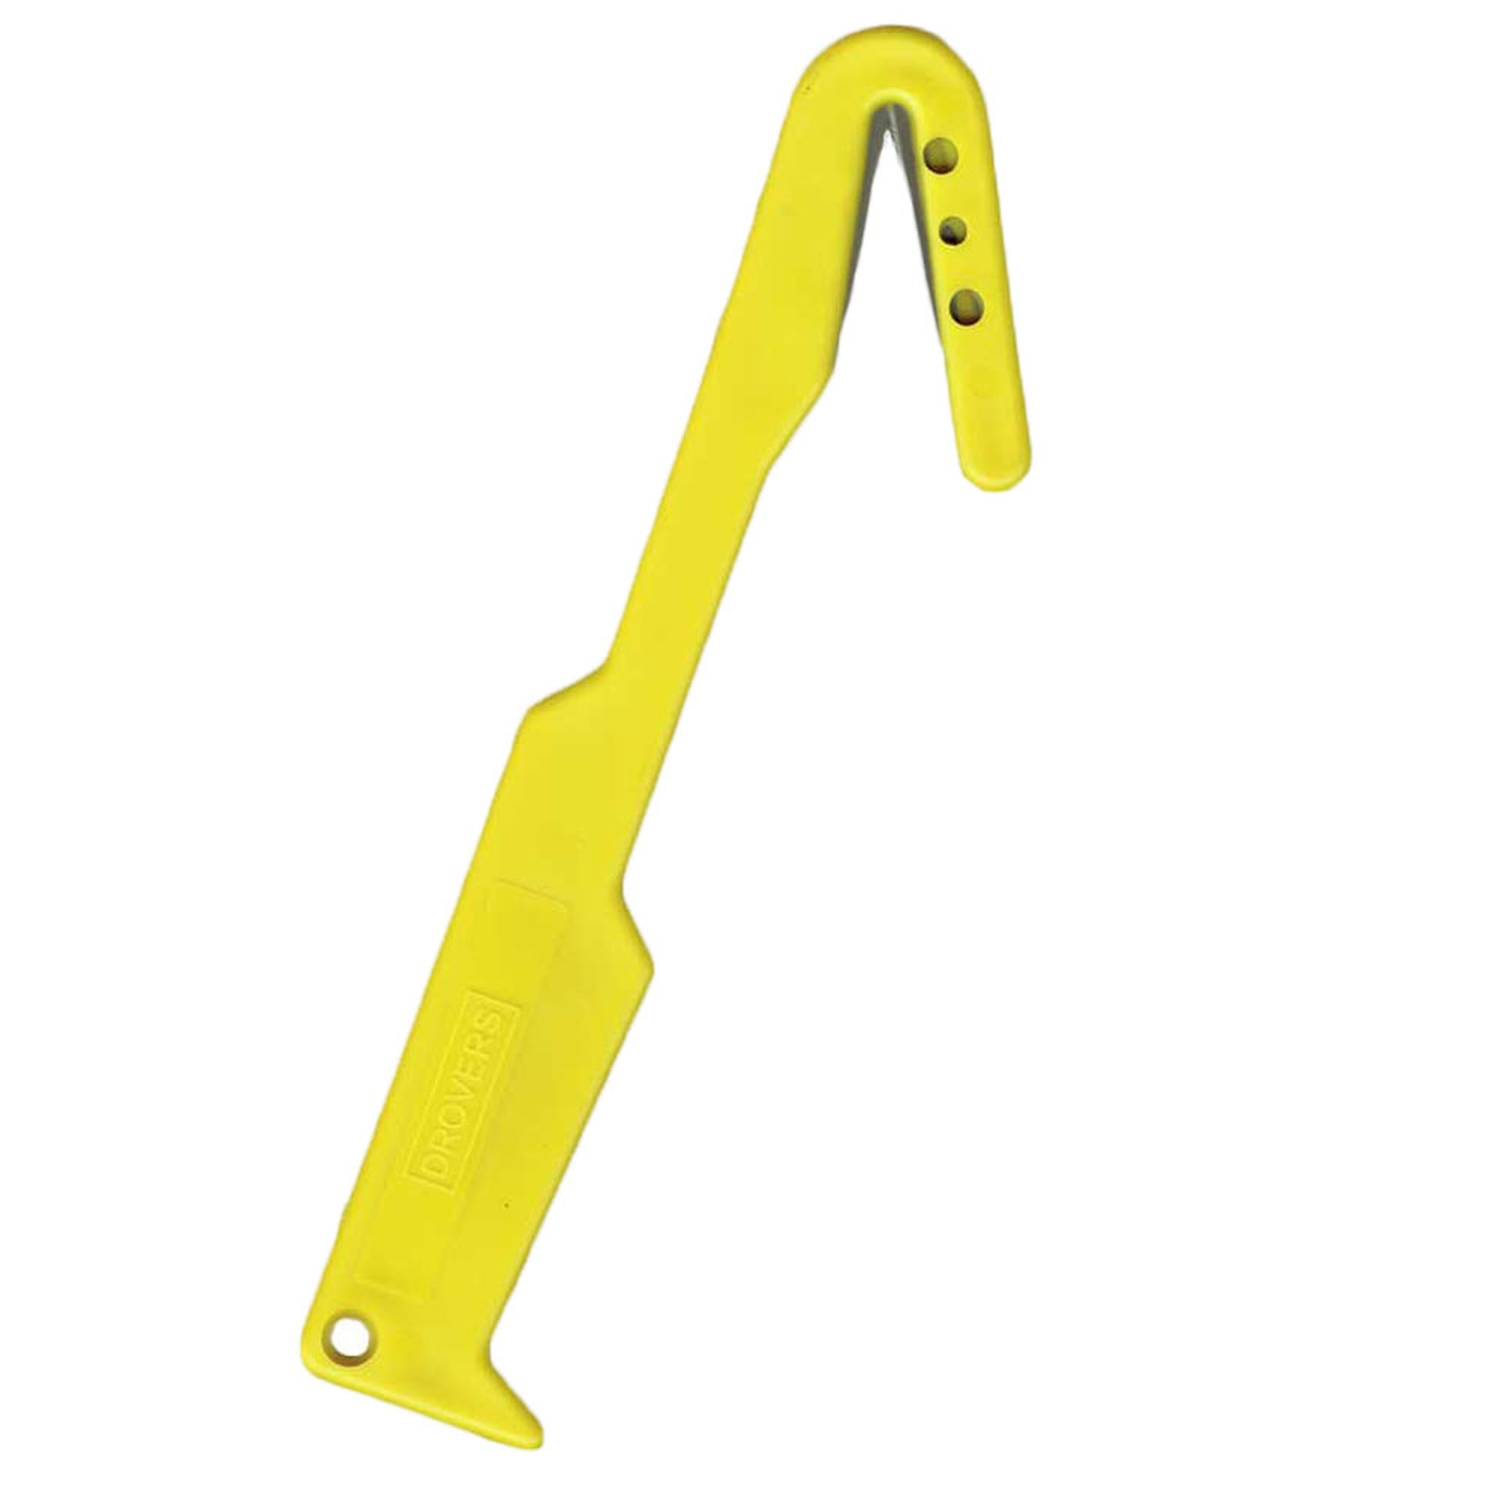 Universal-Folienschneider, 'Yellow Blade', gelb